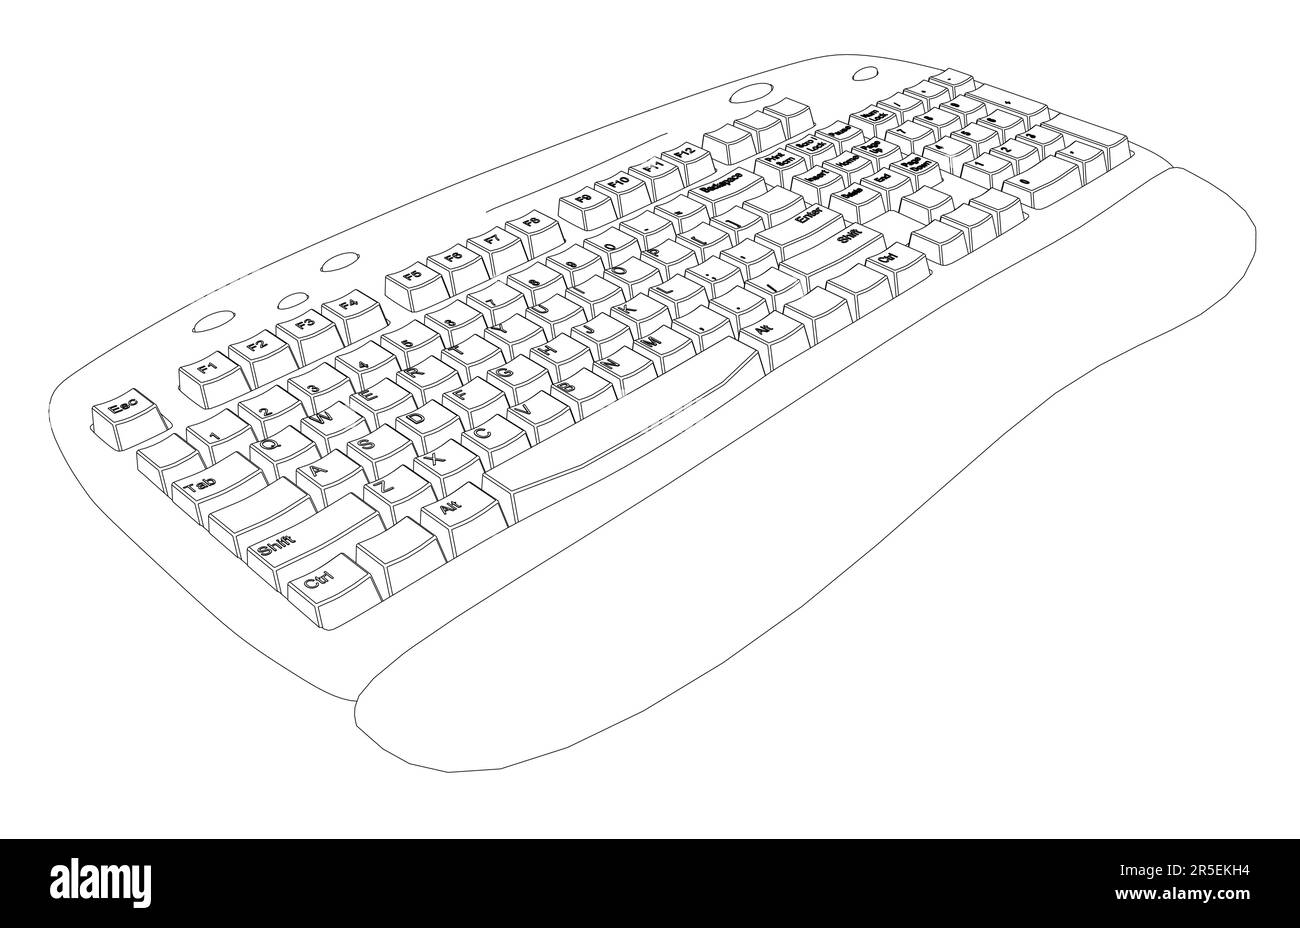 Keyboard Drawing Images - Free Download on Freepik